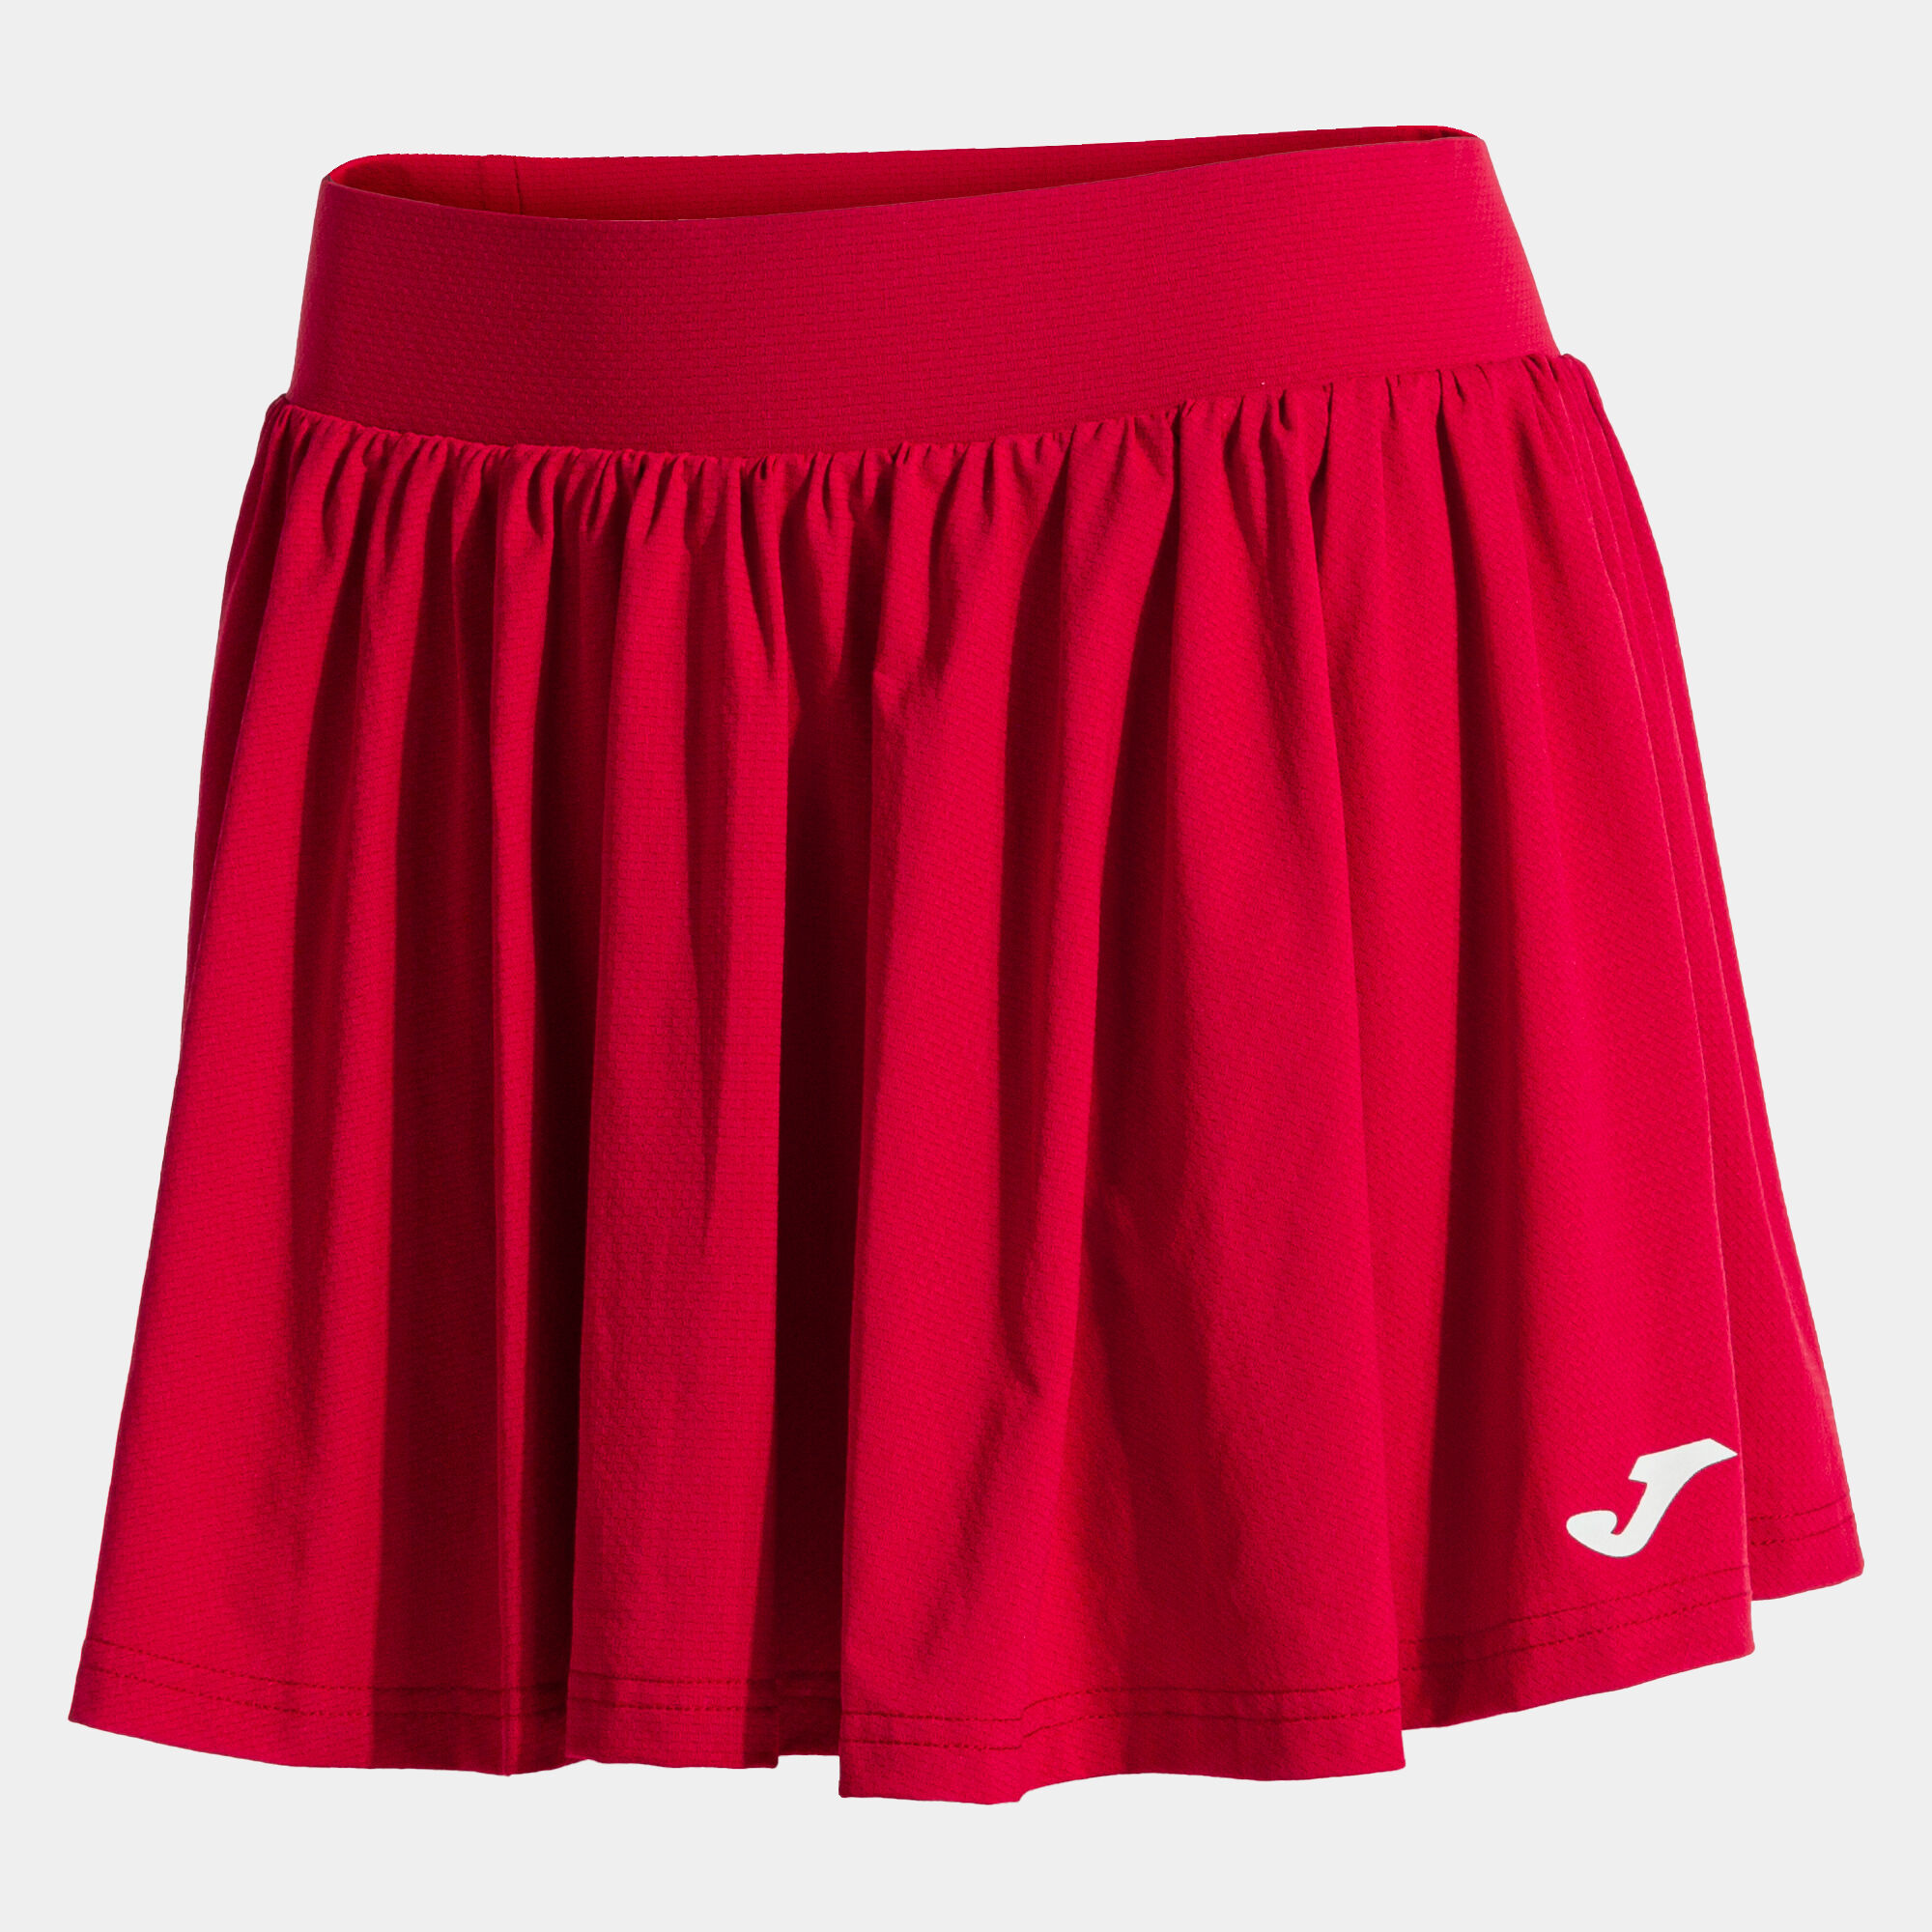 Skirt woman Smash red